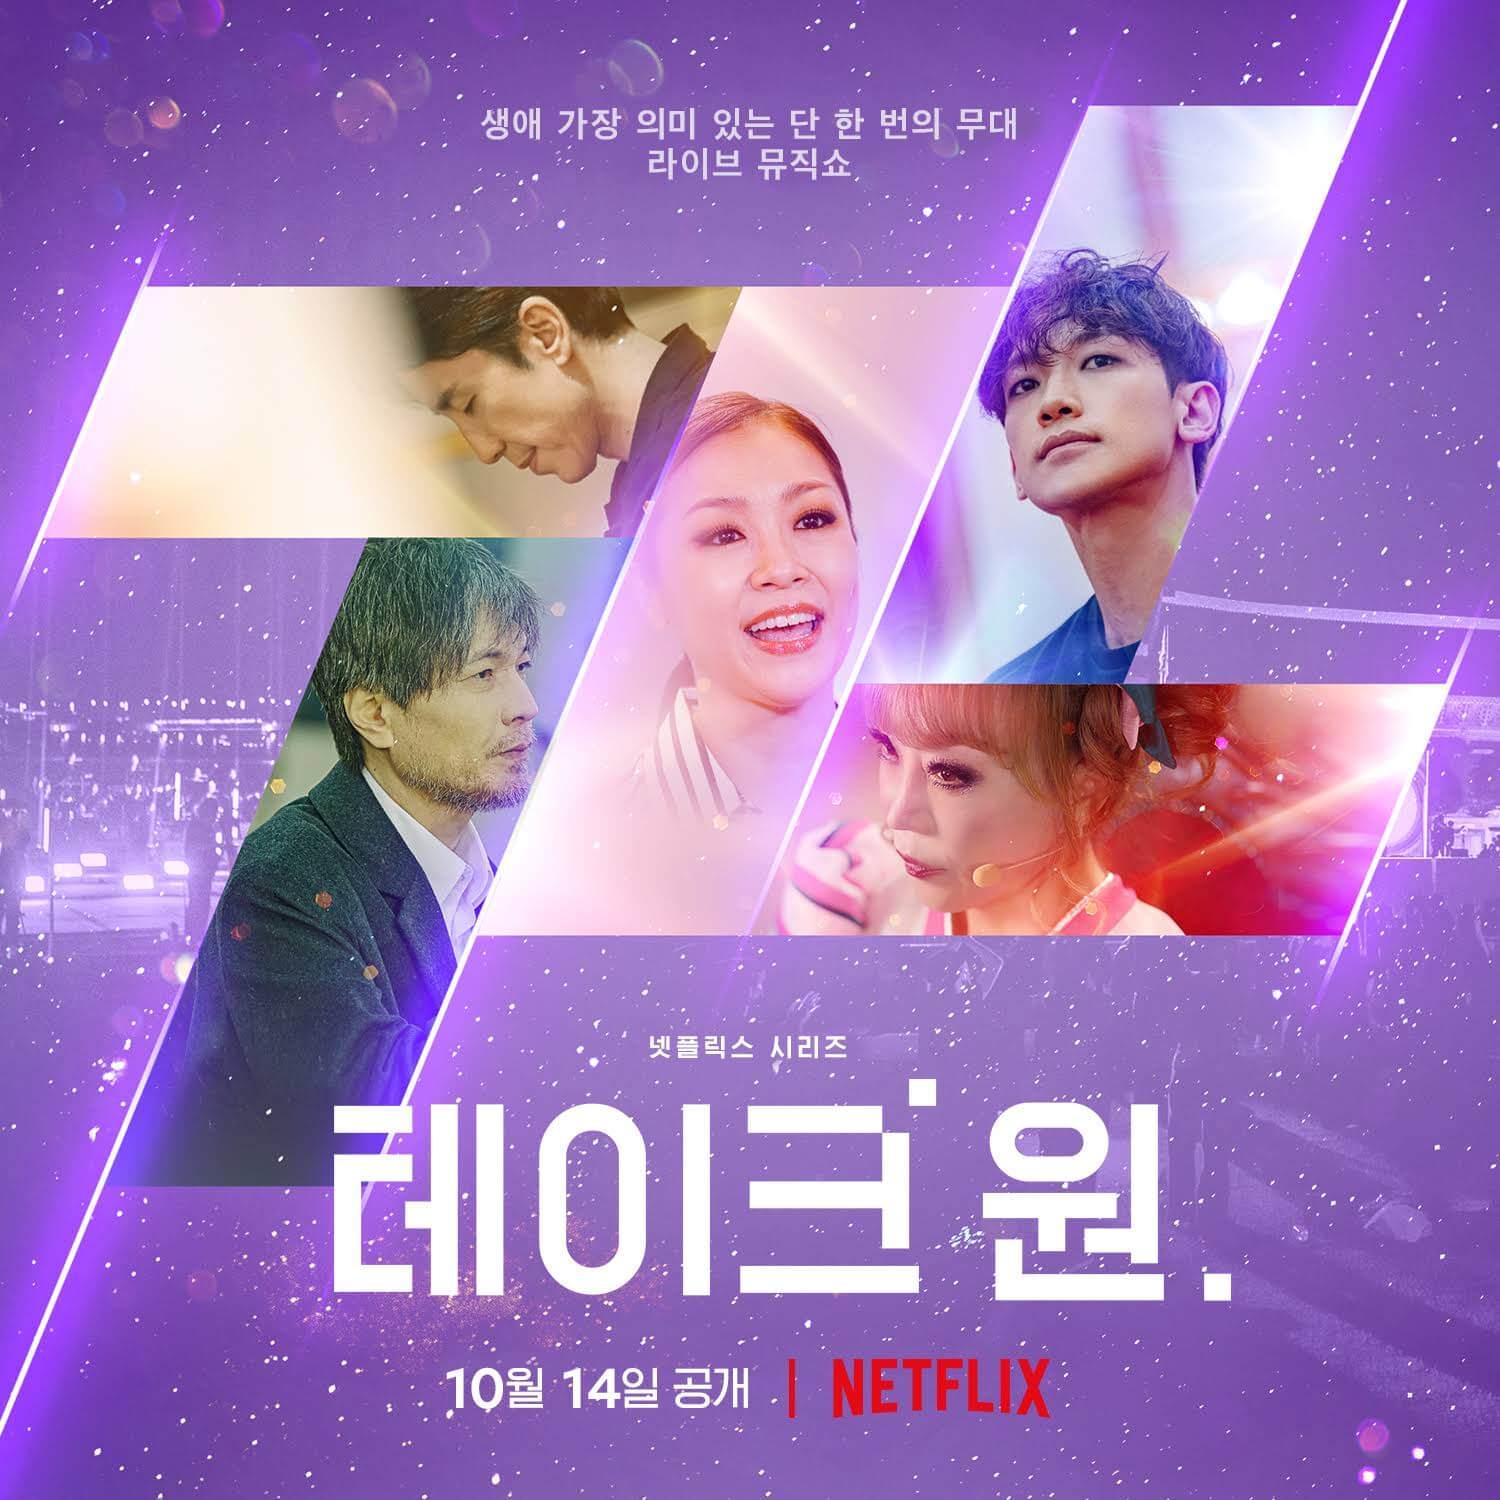 عرض منوعات الموسيقى الكورية يأخذ 1 قادمًا إلى Netflix في أكتوبر 2022 ملصق 1